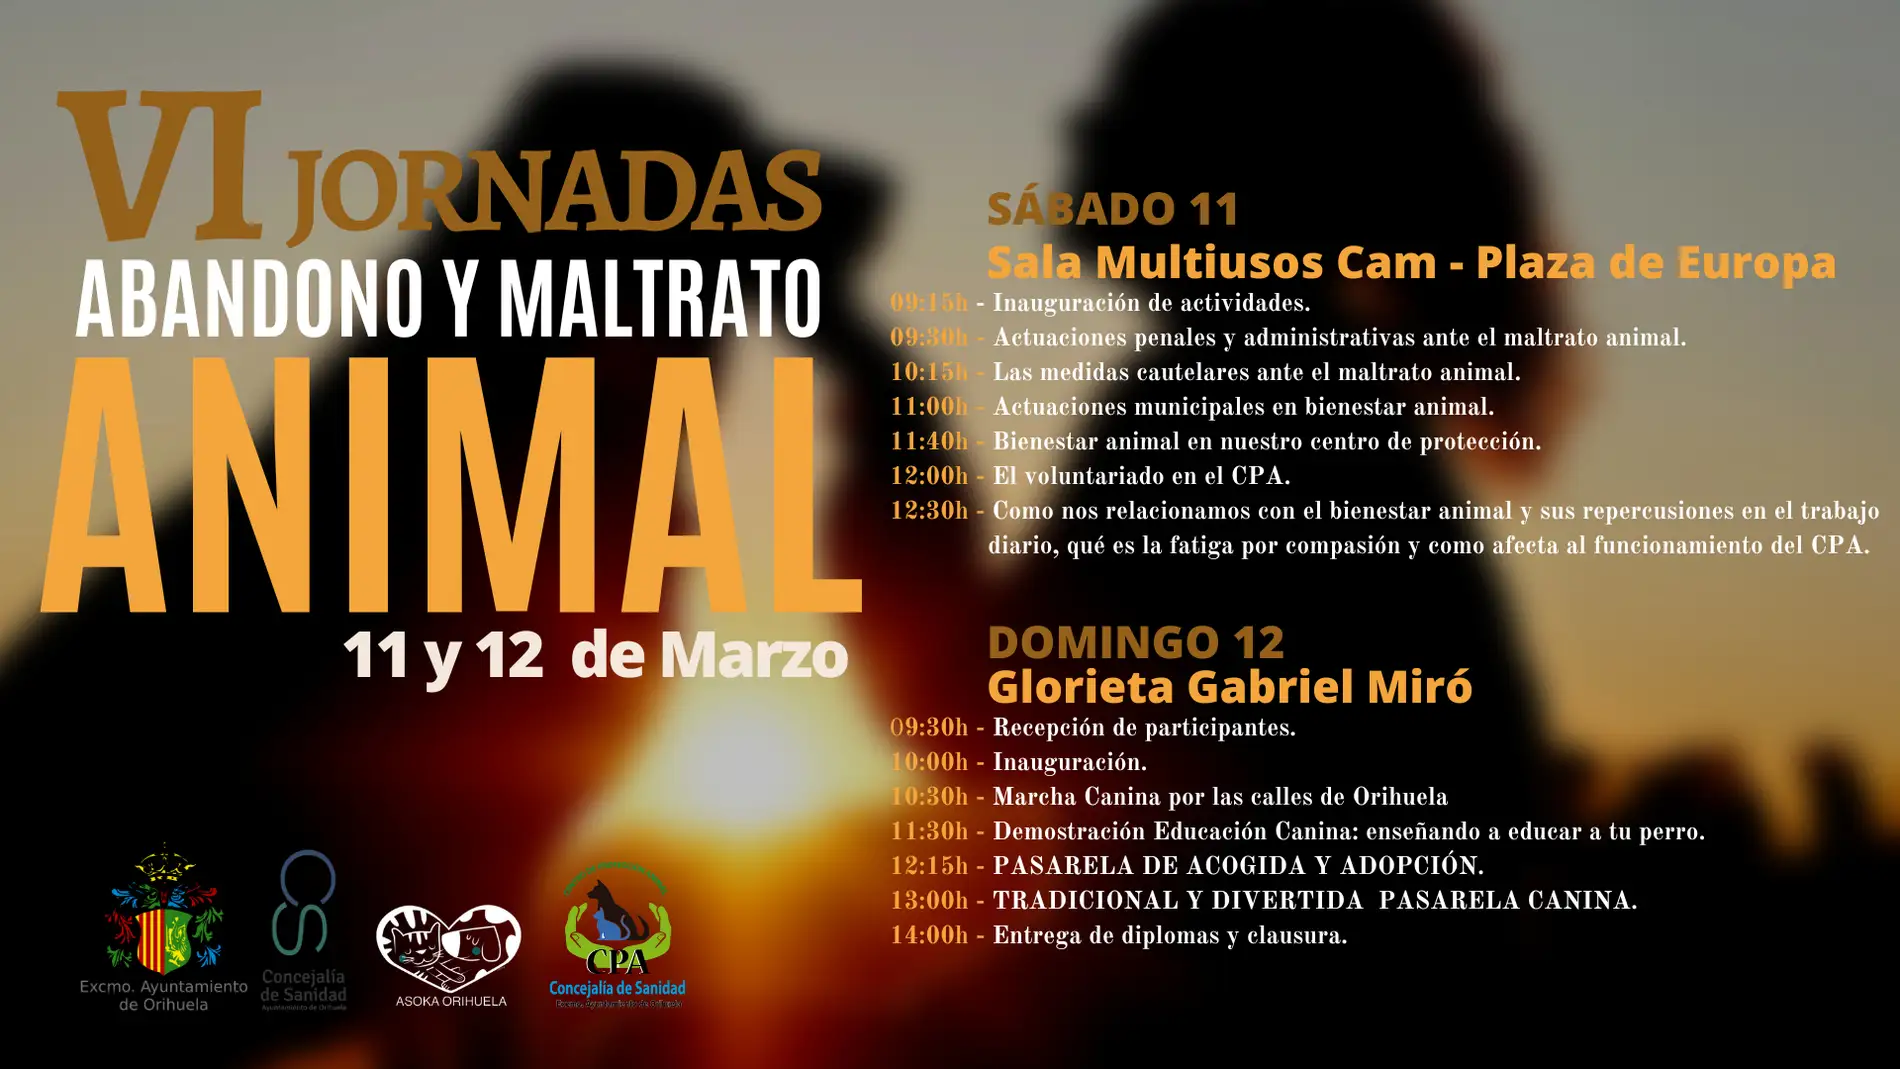 La Concejalía de Sanidad de Orihuela organiza las VI Jornadas sobre abandono y maltrato animal 